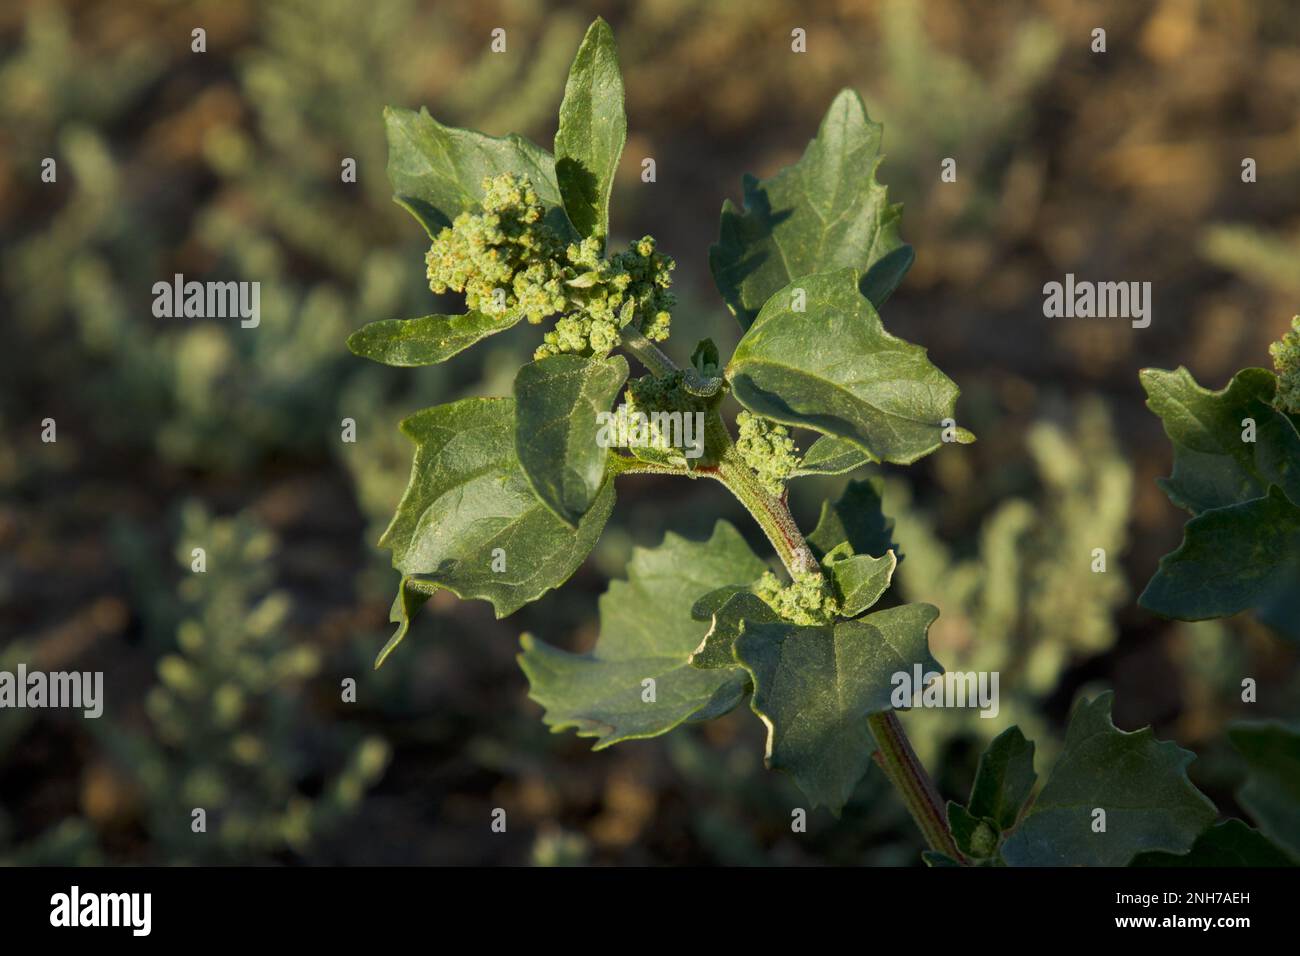 Mugwort. Common mugwort. Felon herb. Artemisia vulgaris. Wild wormwood. Riverside wormwood. St. John's wort. Stock Photo